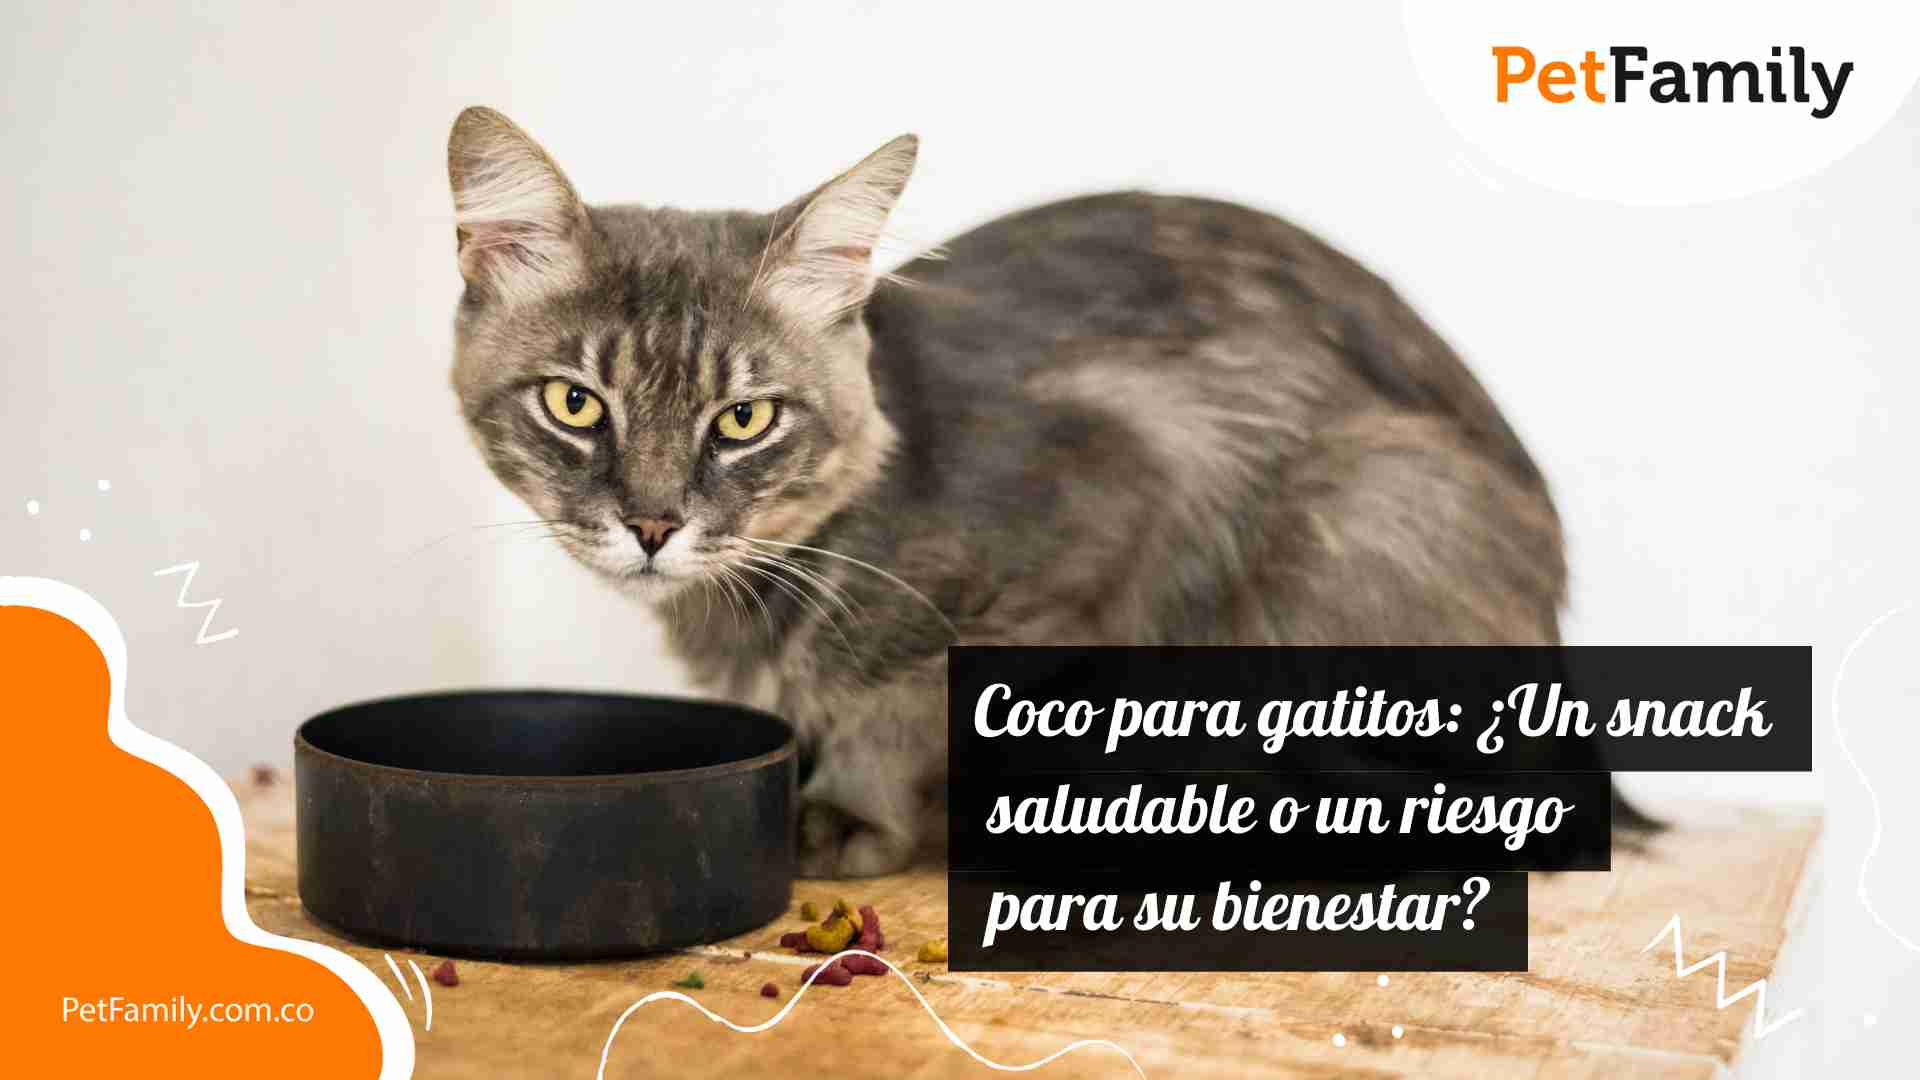 Coco para gatitos: ¿Un snack saludable o un riesgo para su bienestar? 